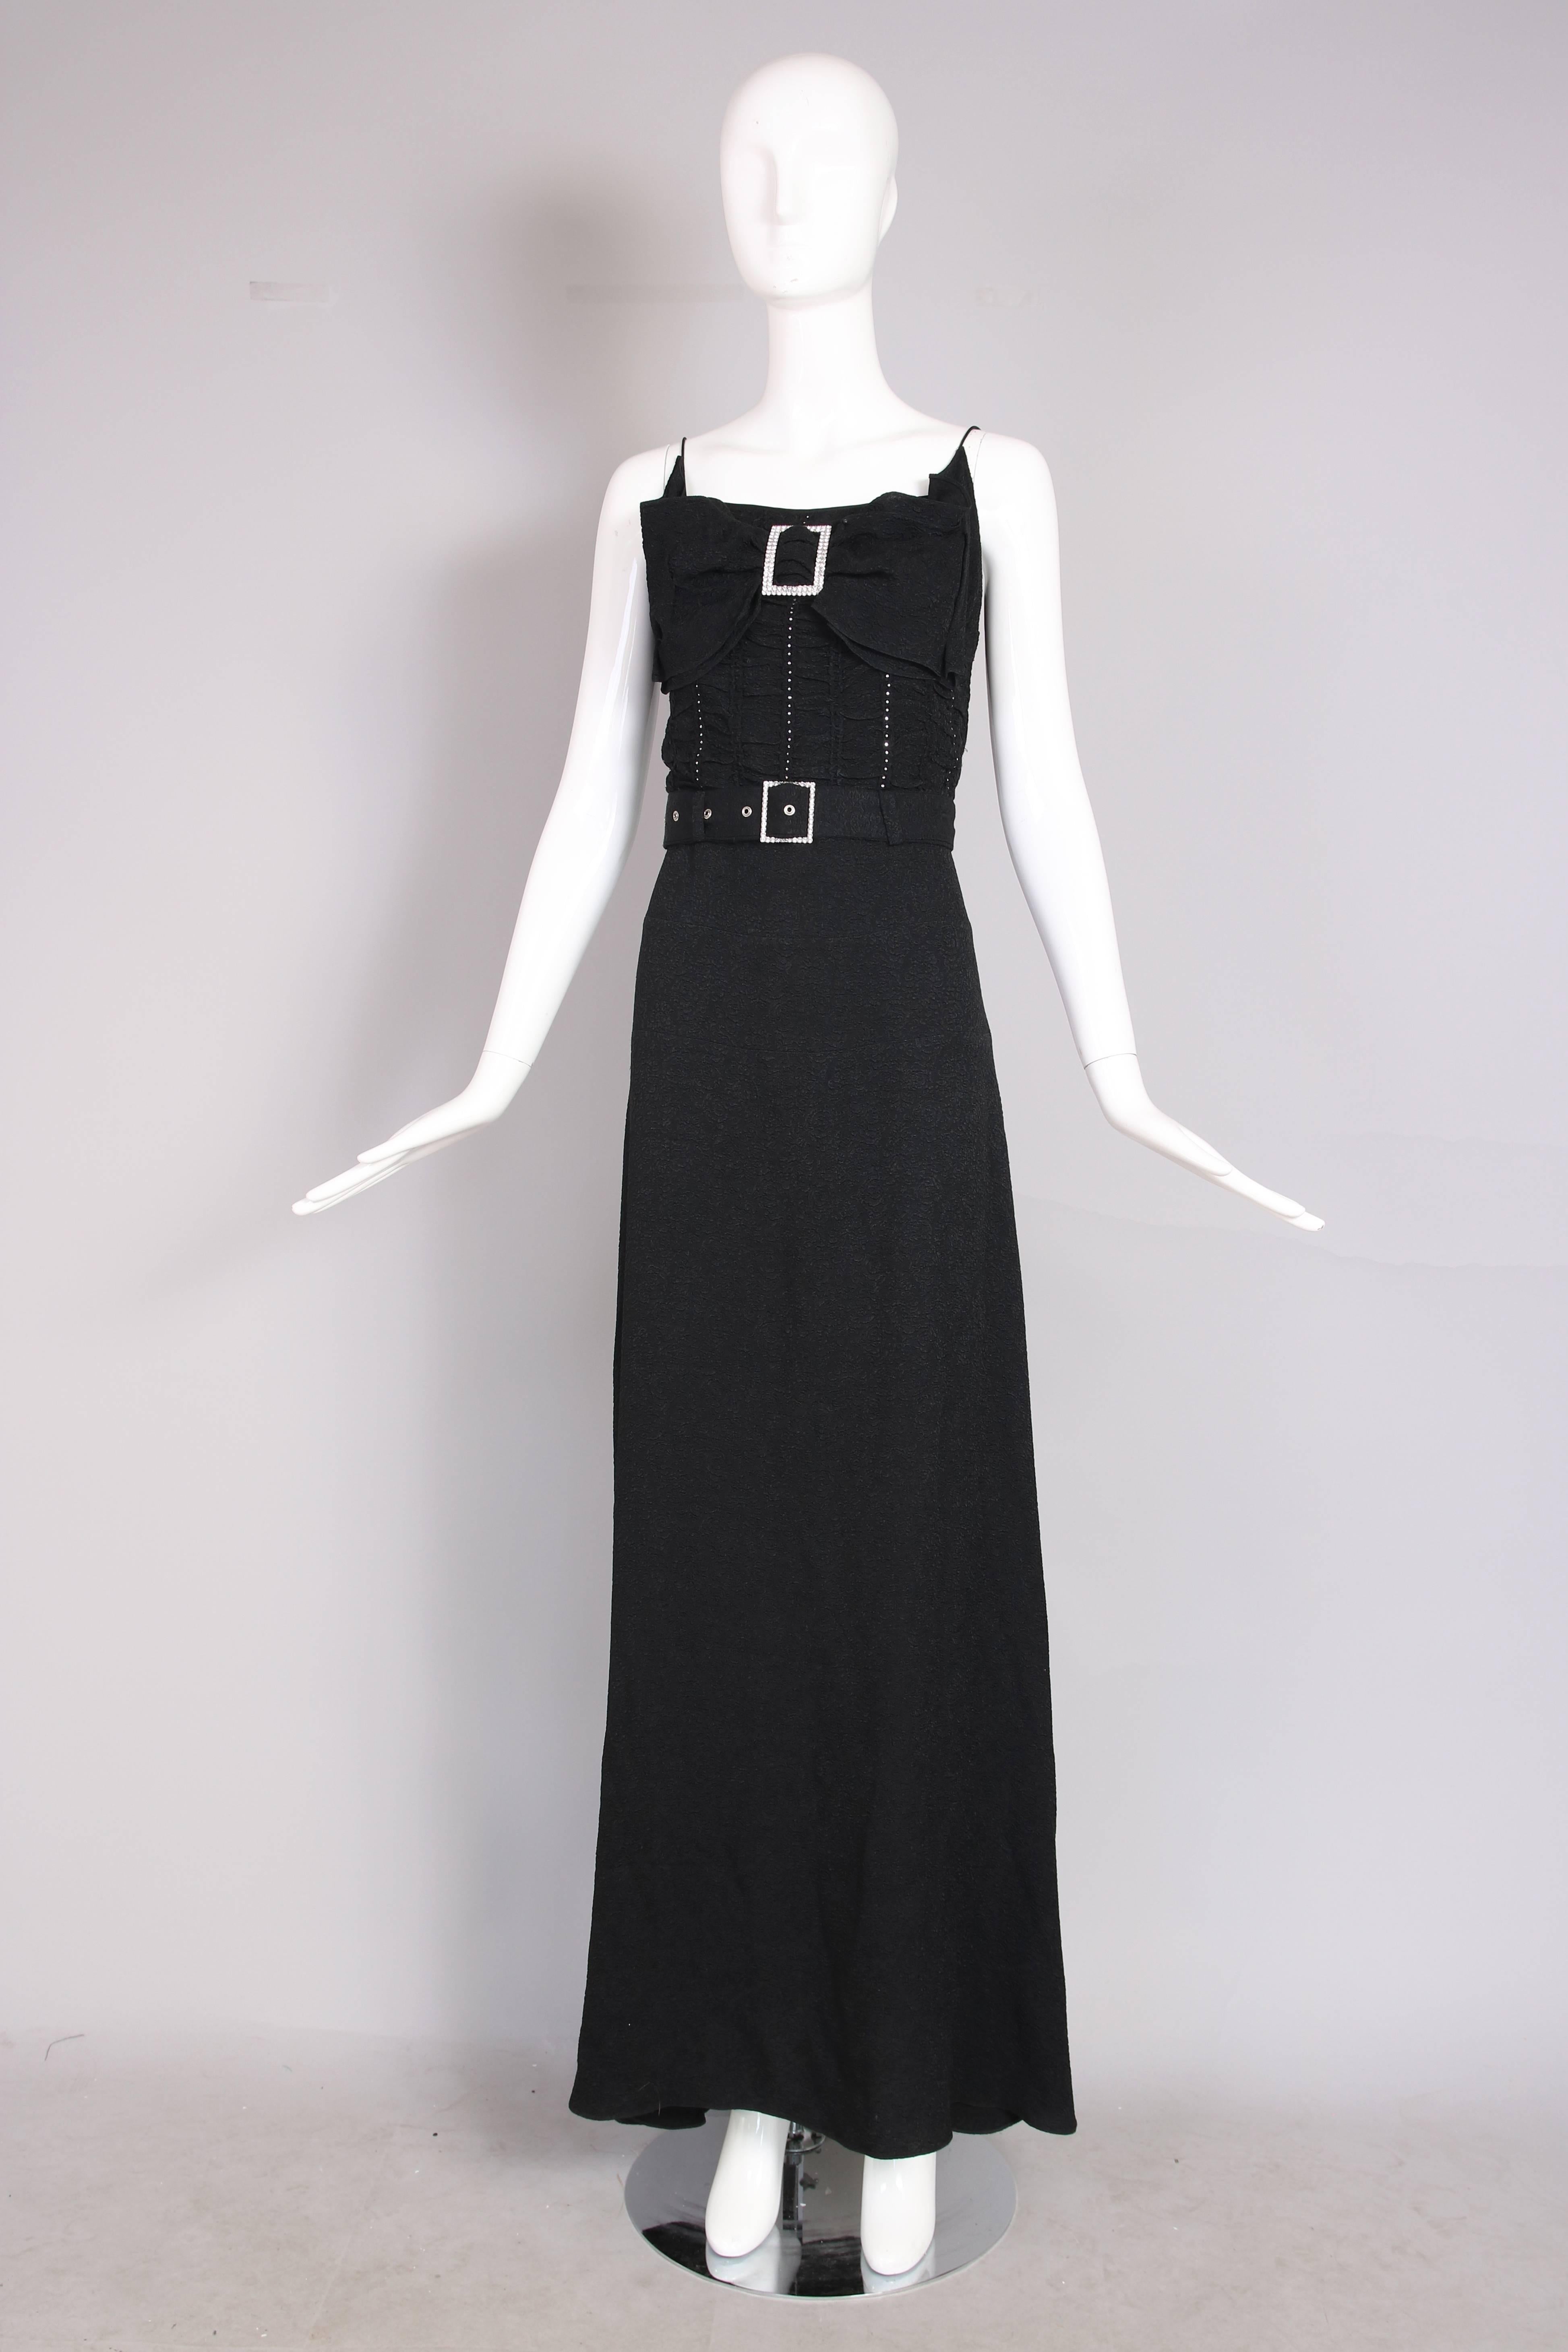 1940s inspired dresses